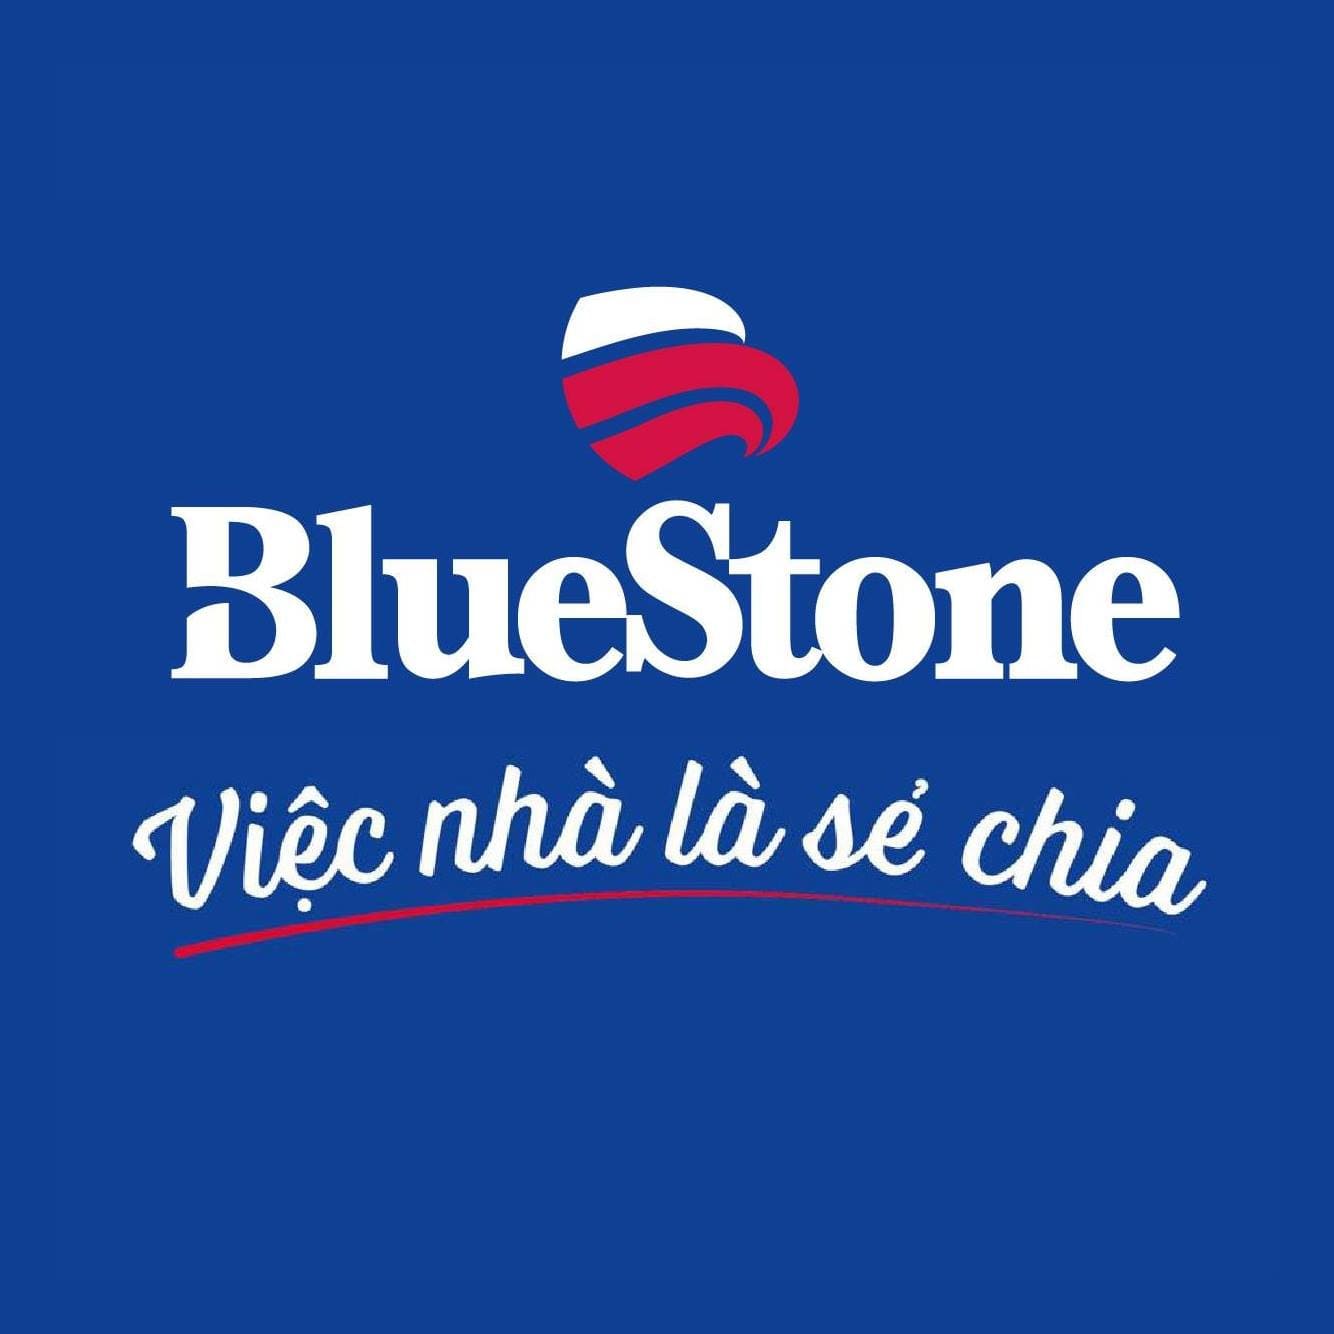 thương hiệu bluestone của nước nào